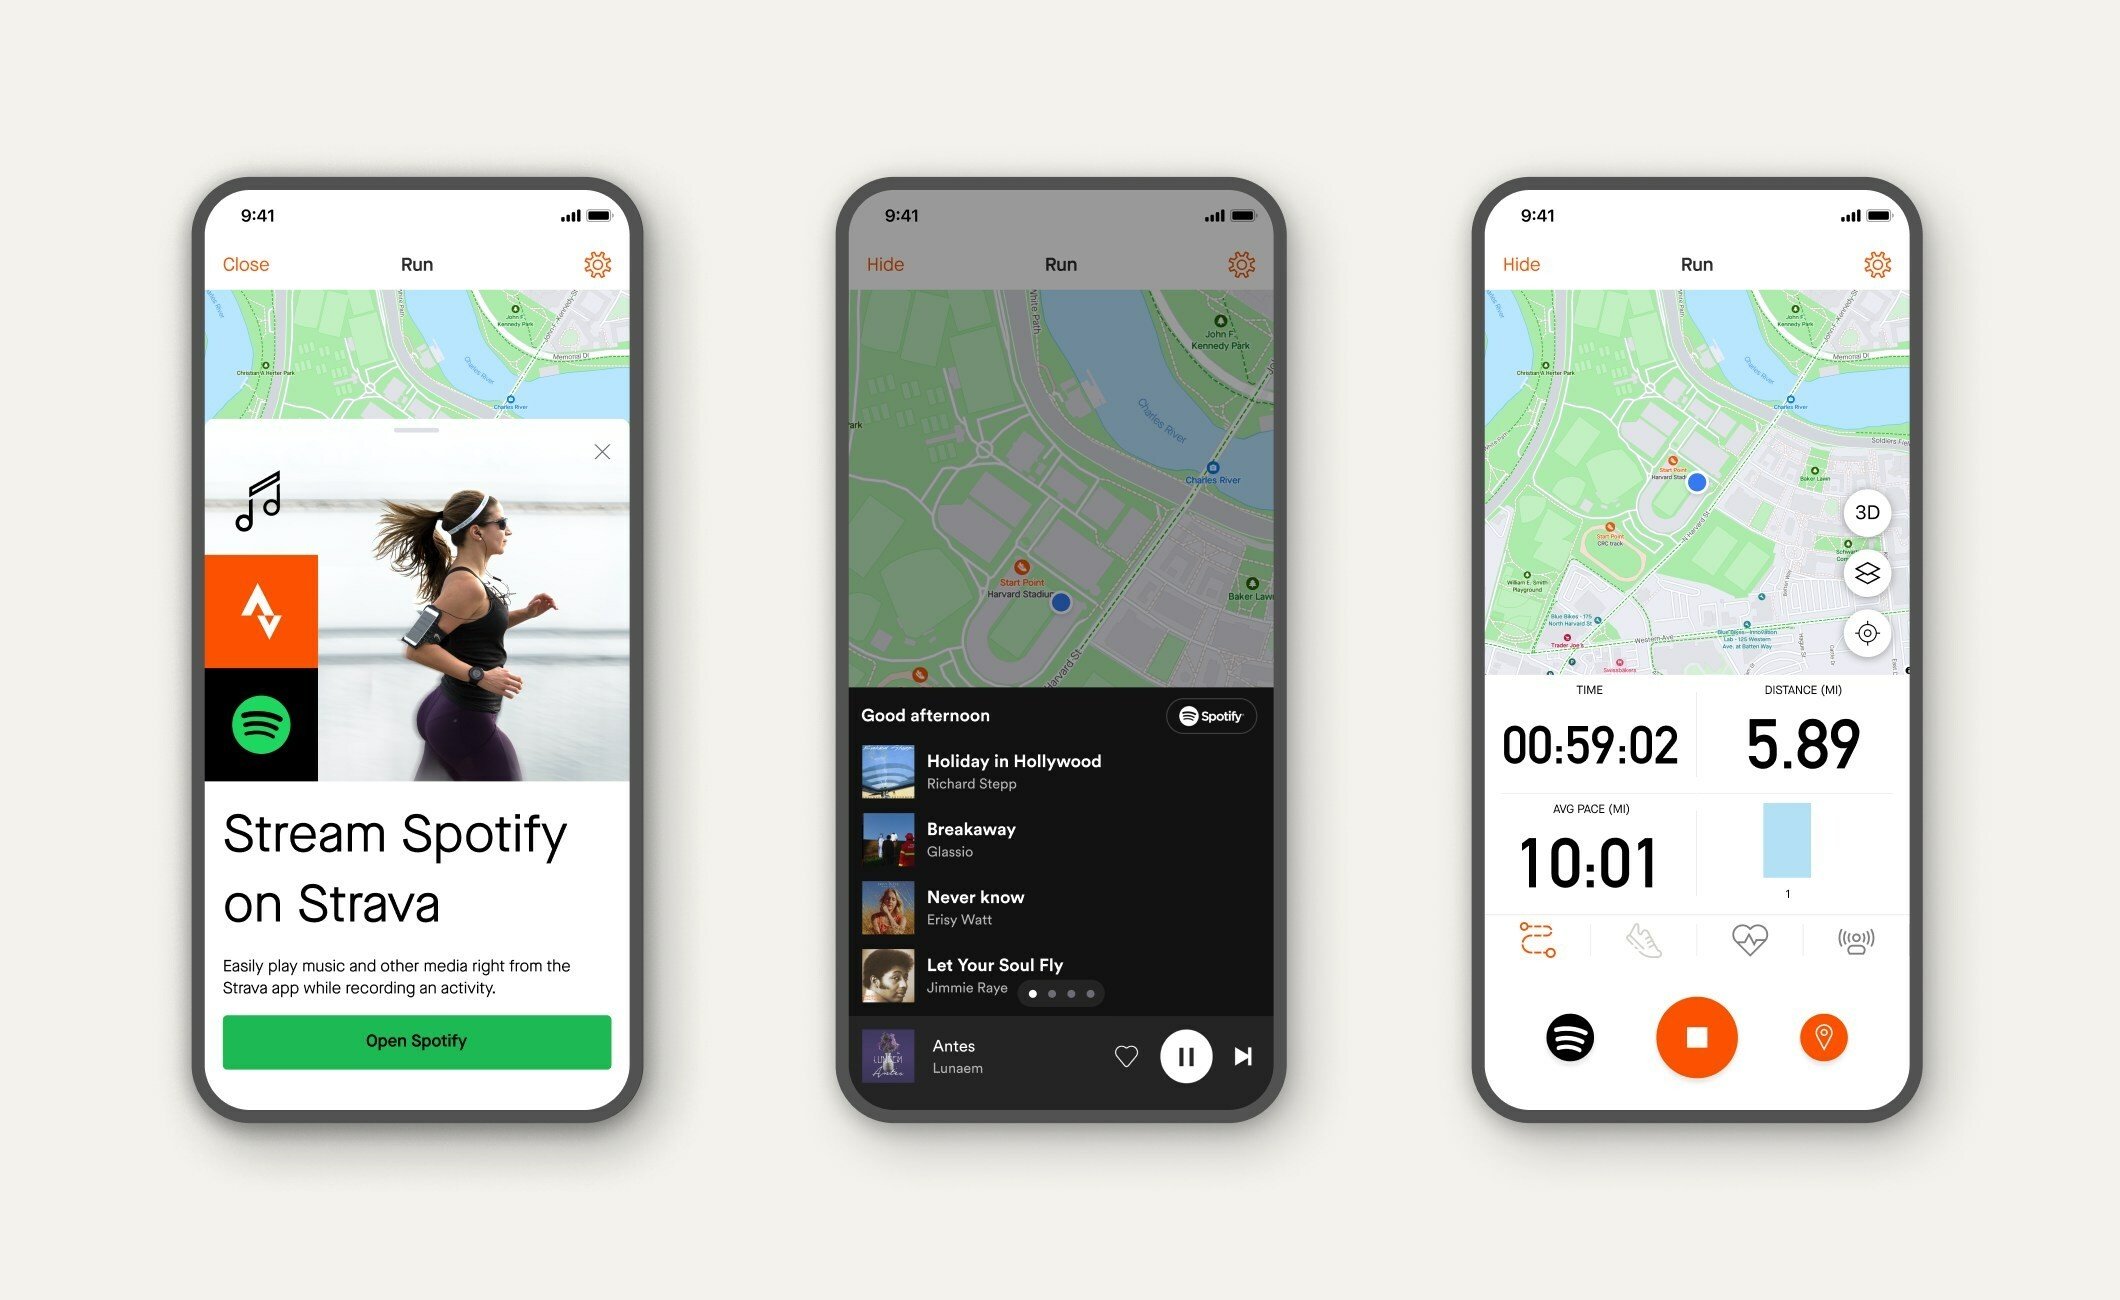 Usuários poderão escolher e controlar as faixas do Spotify diretamente pelo Strava.